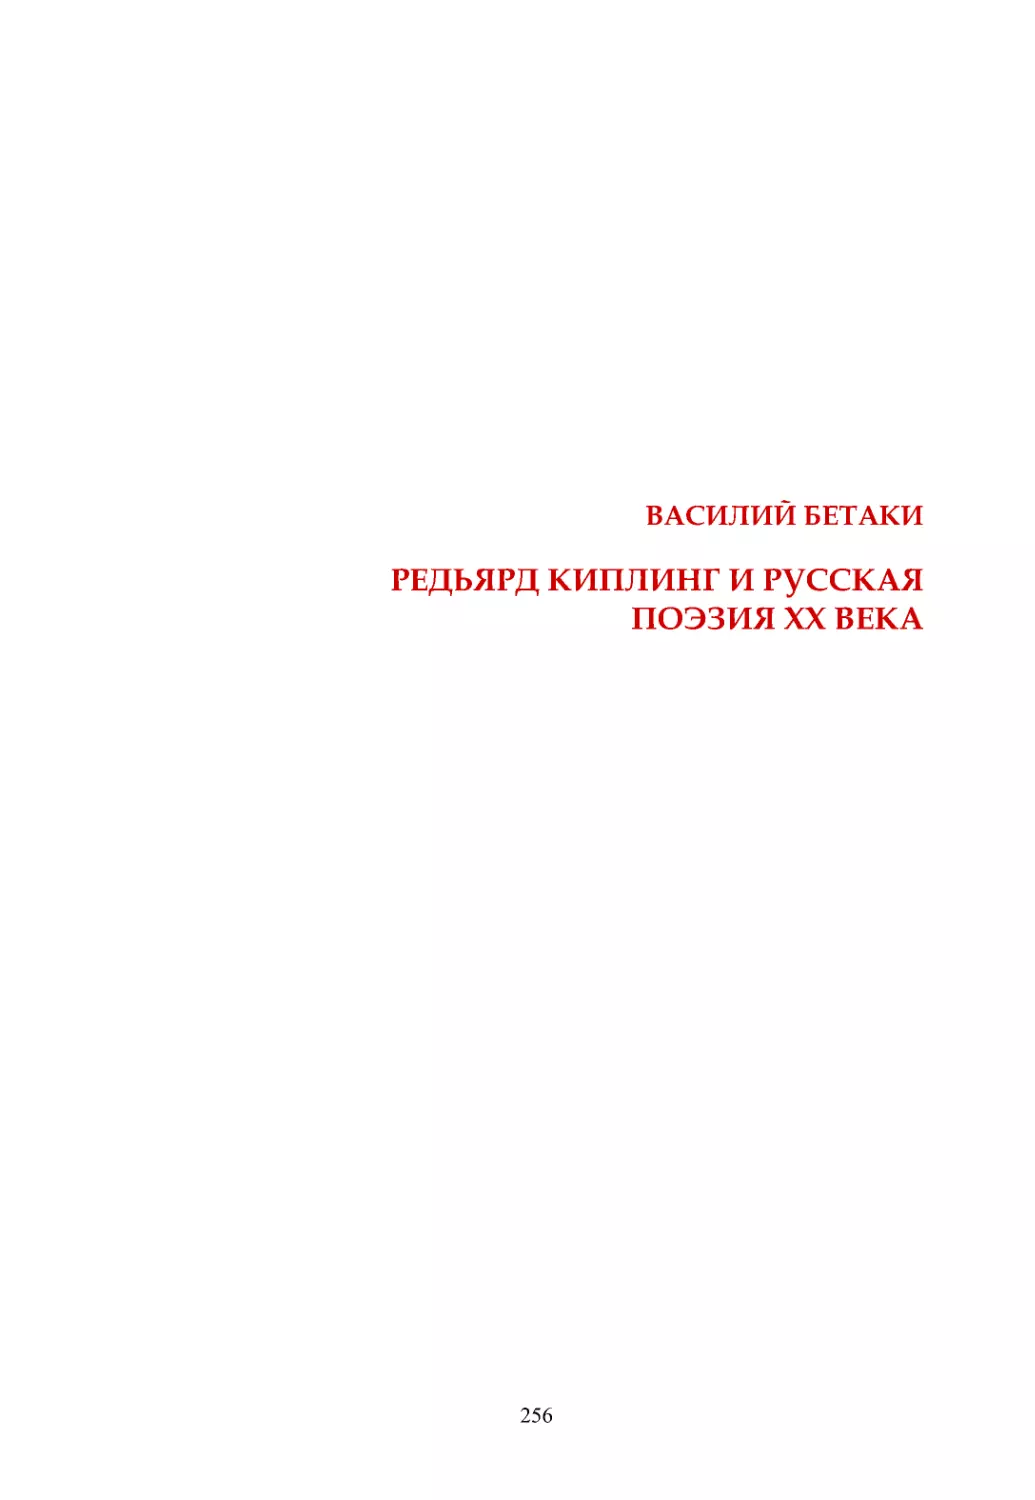 В. Бетаки. Редьярд Киплинг и русская поэзия ХХ века